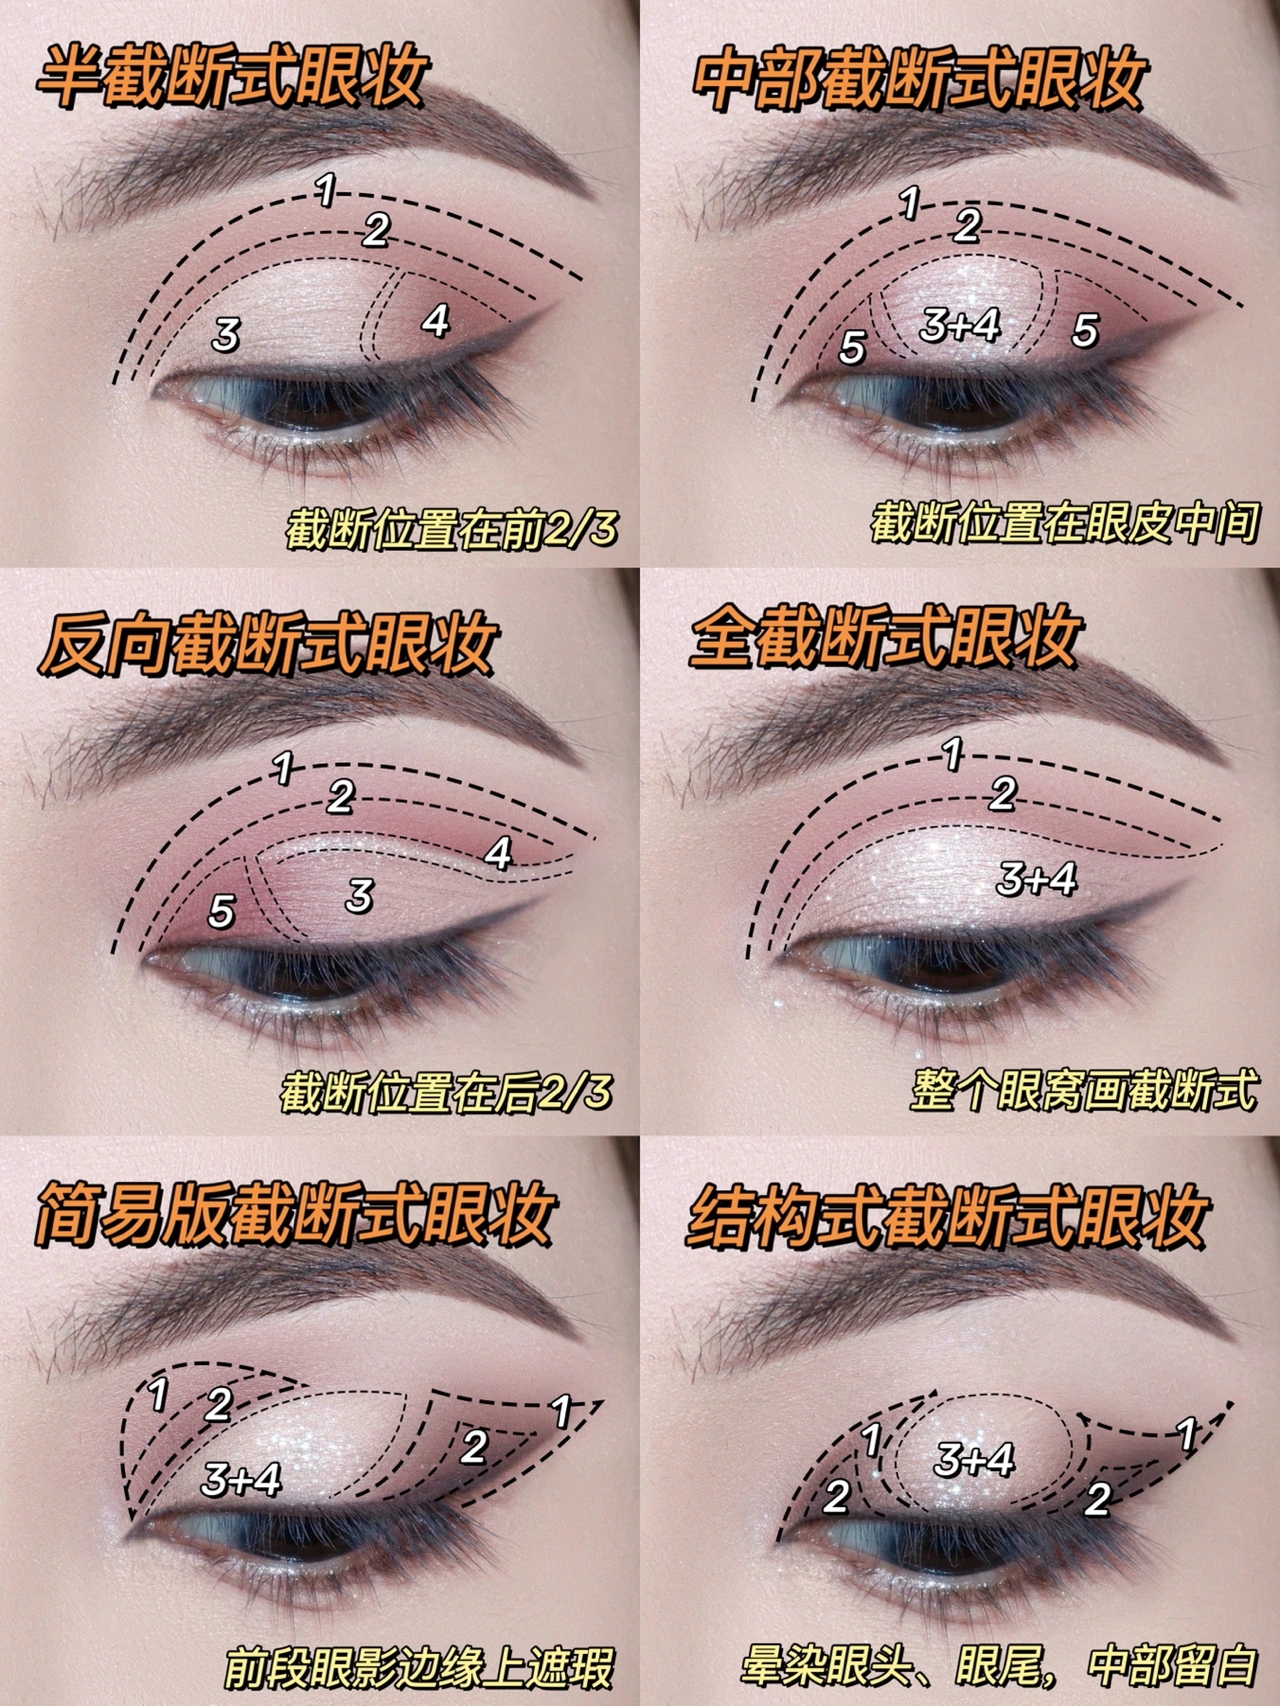 六种截断式眼妆画法